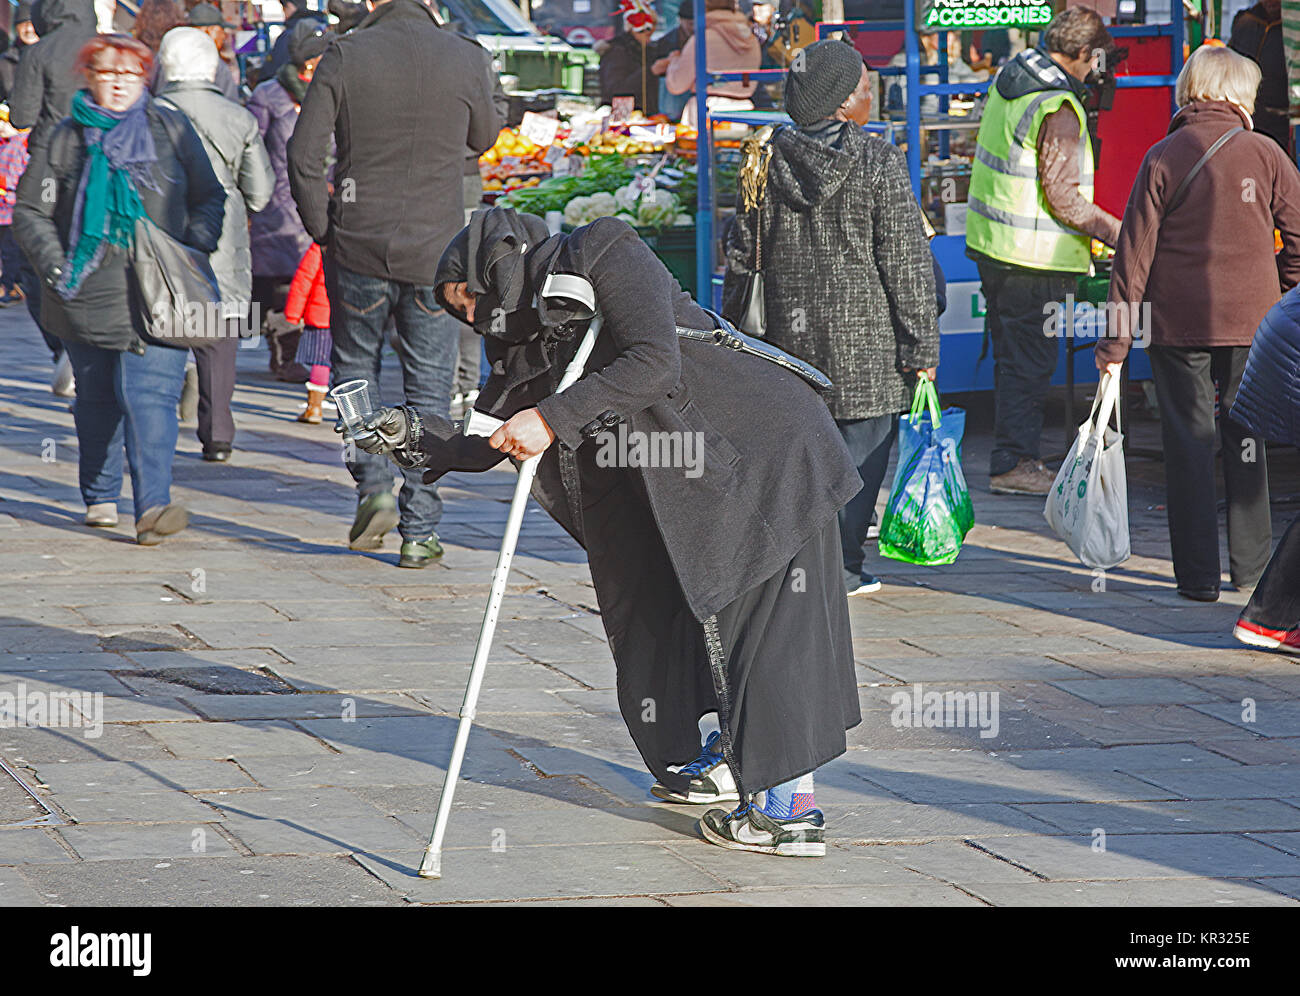 Londres, Lewisham une mobilité Orientale femme mendiant à Lewisham street market Banque D'Images